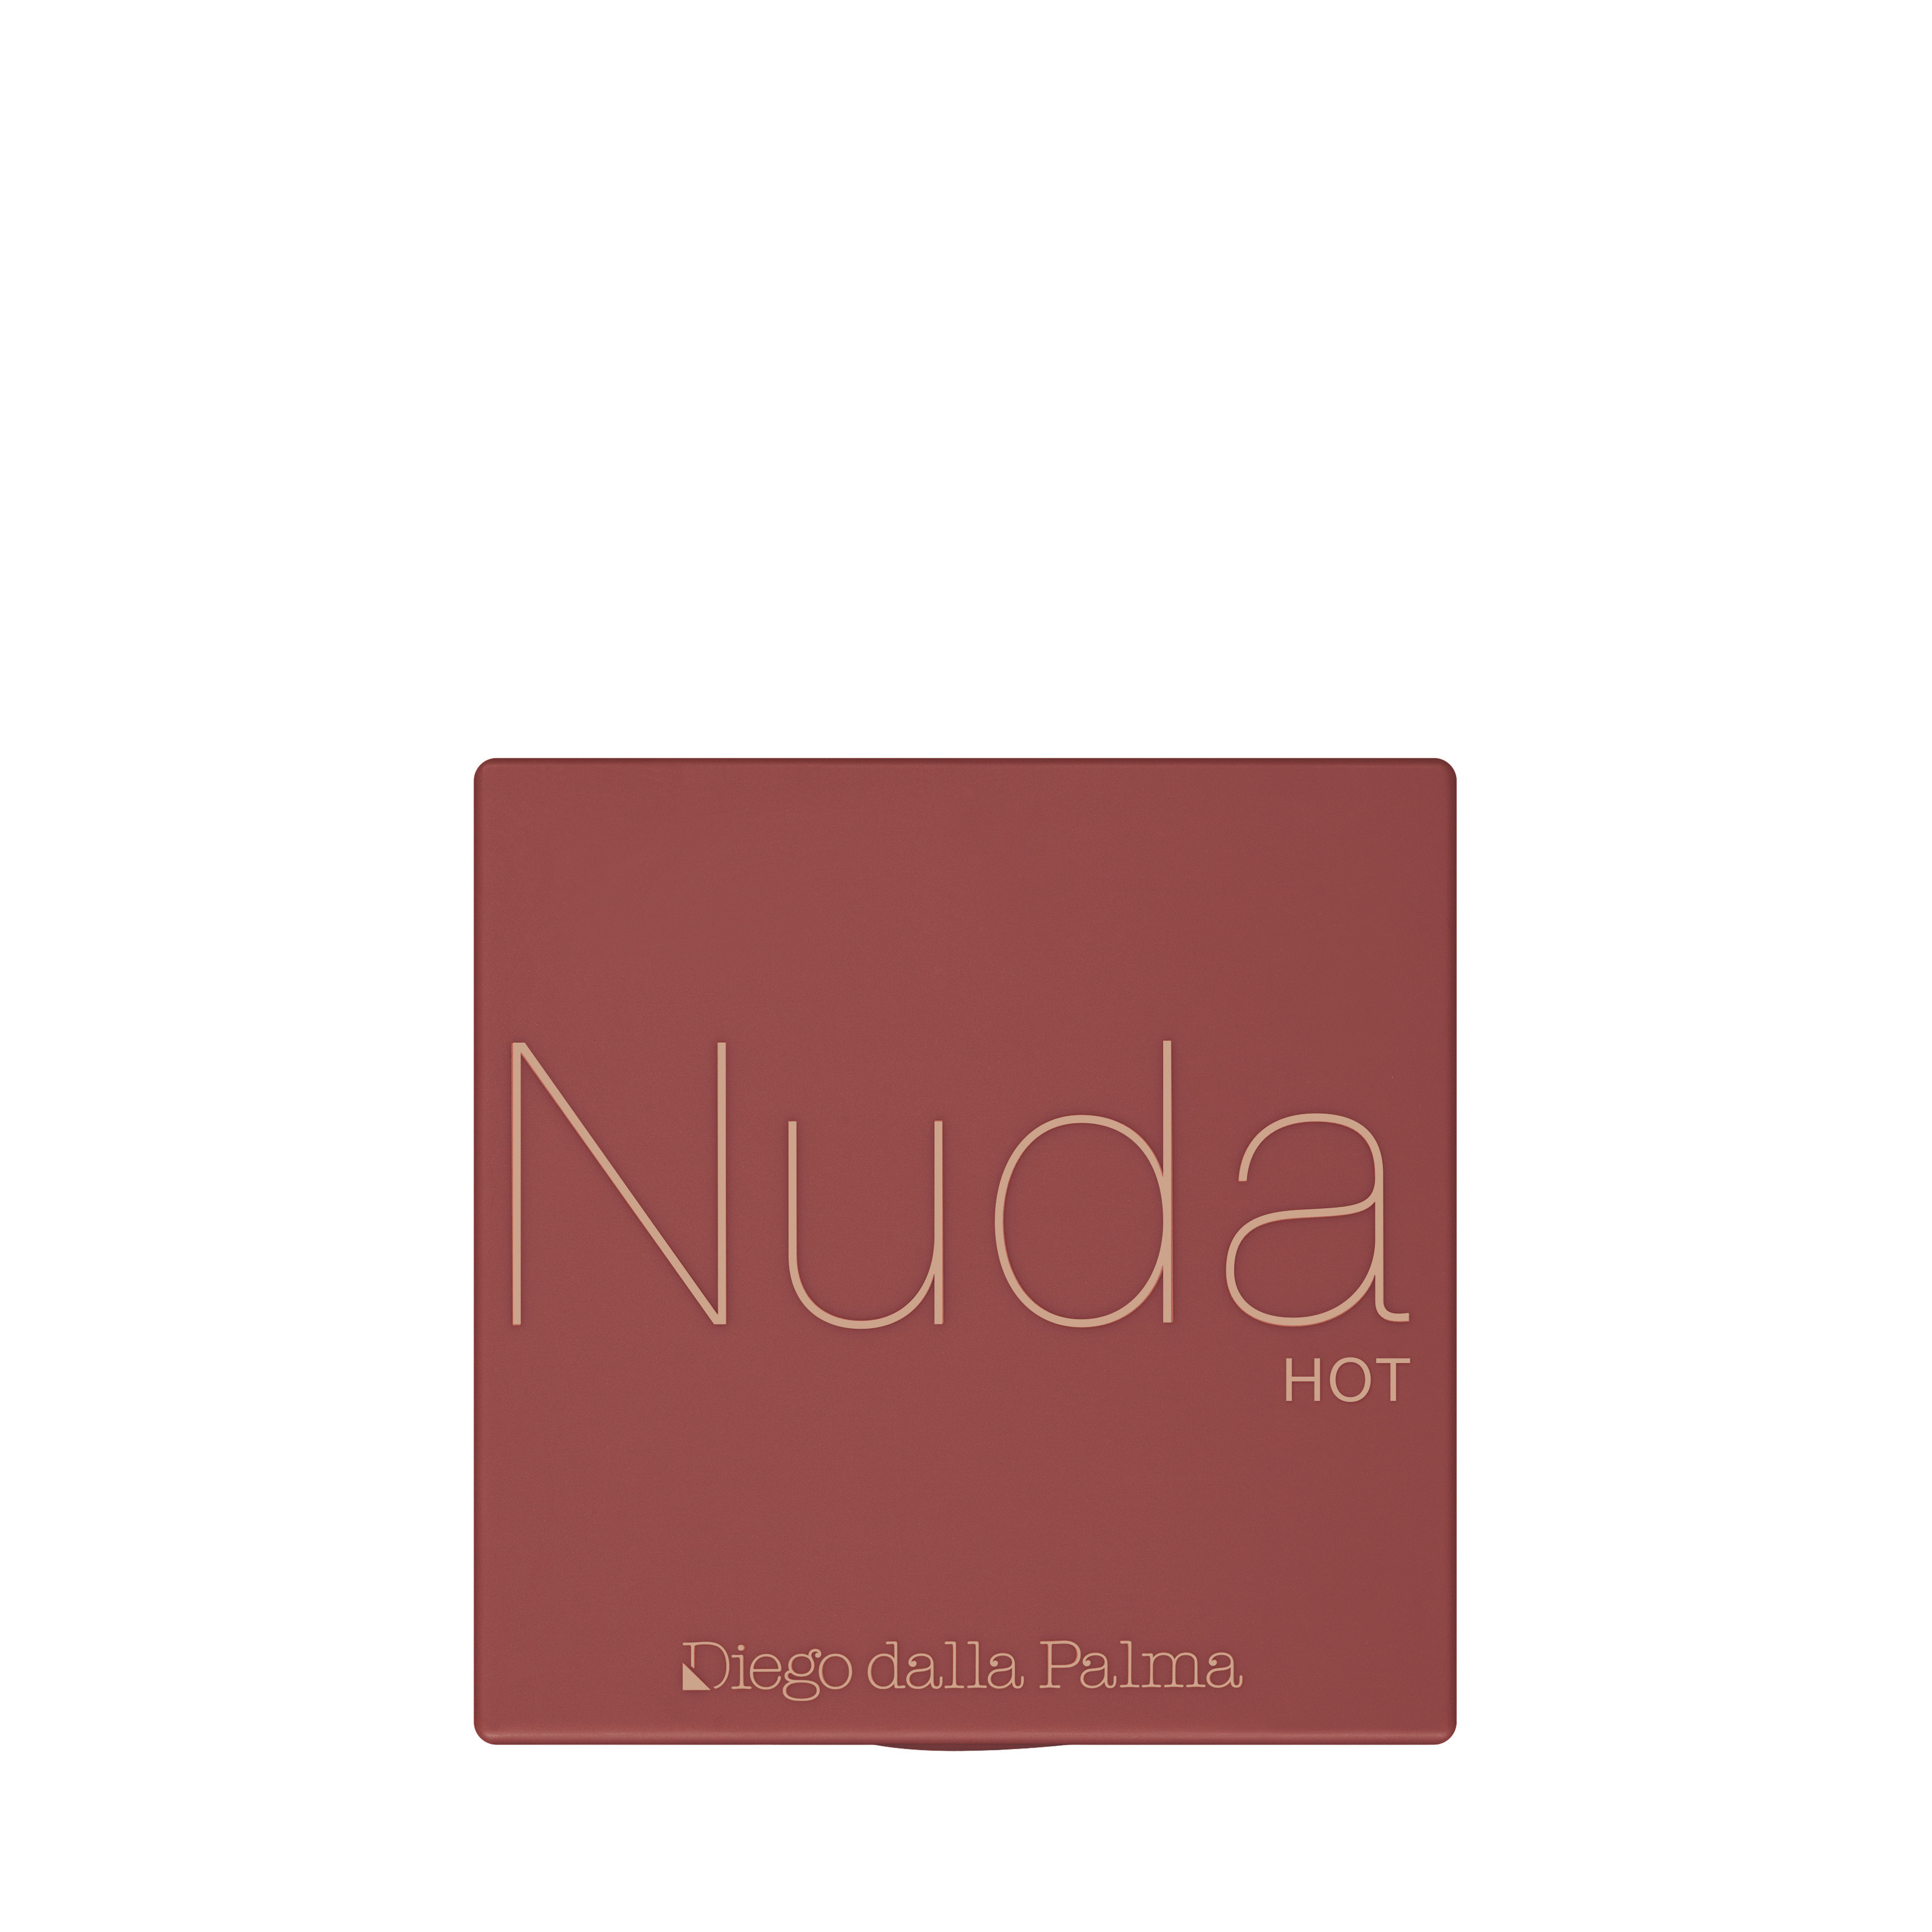 NUDA HOT Palette Occhi - 303, Beige, large image number 1